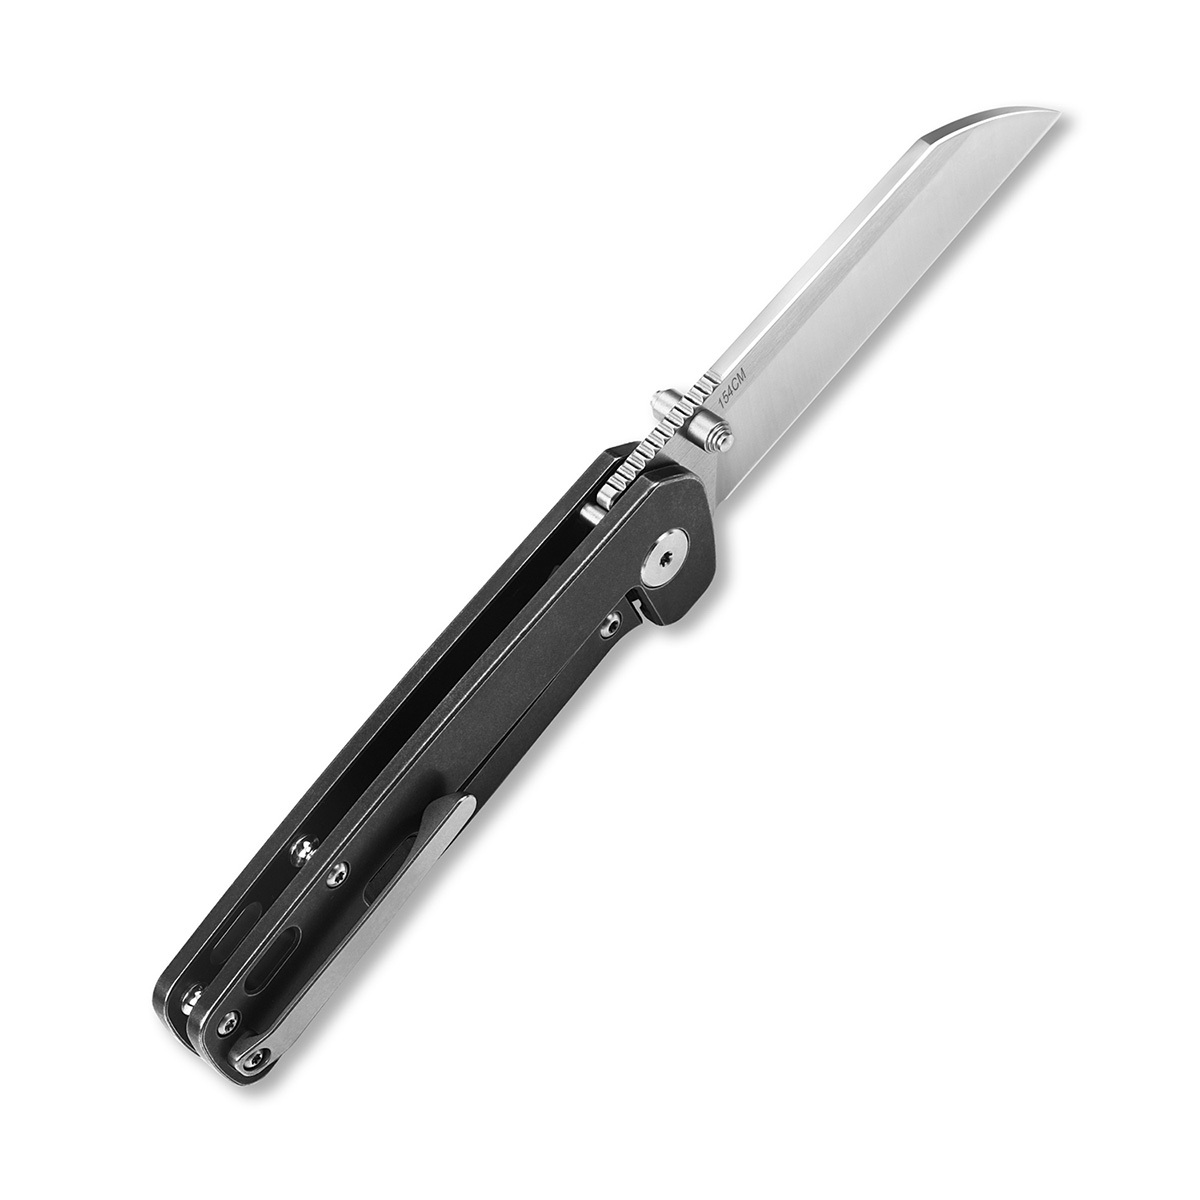 Складной нож QSP Penguin, сталь 154CM, рукоять титан - фото 2